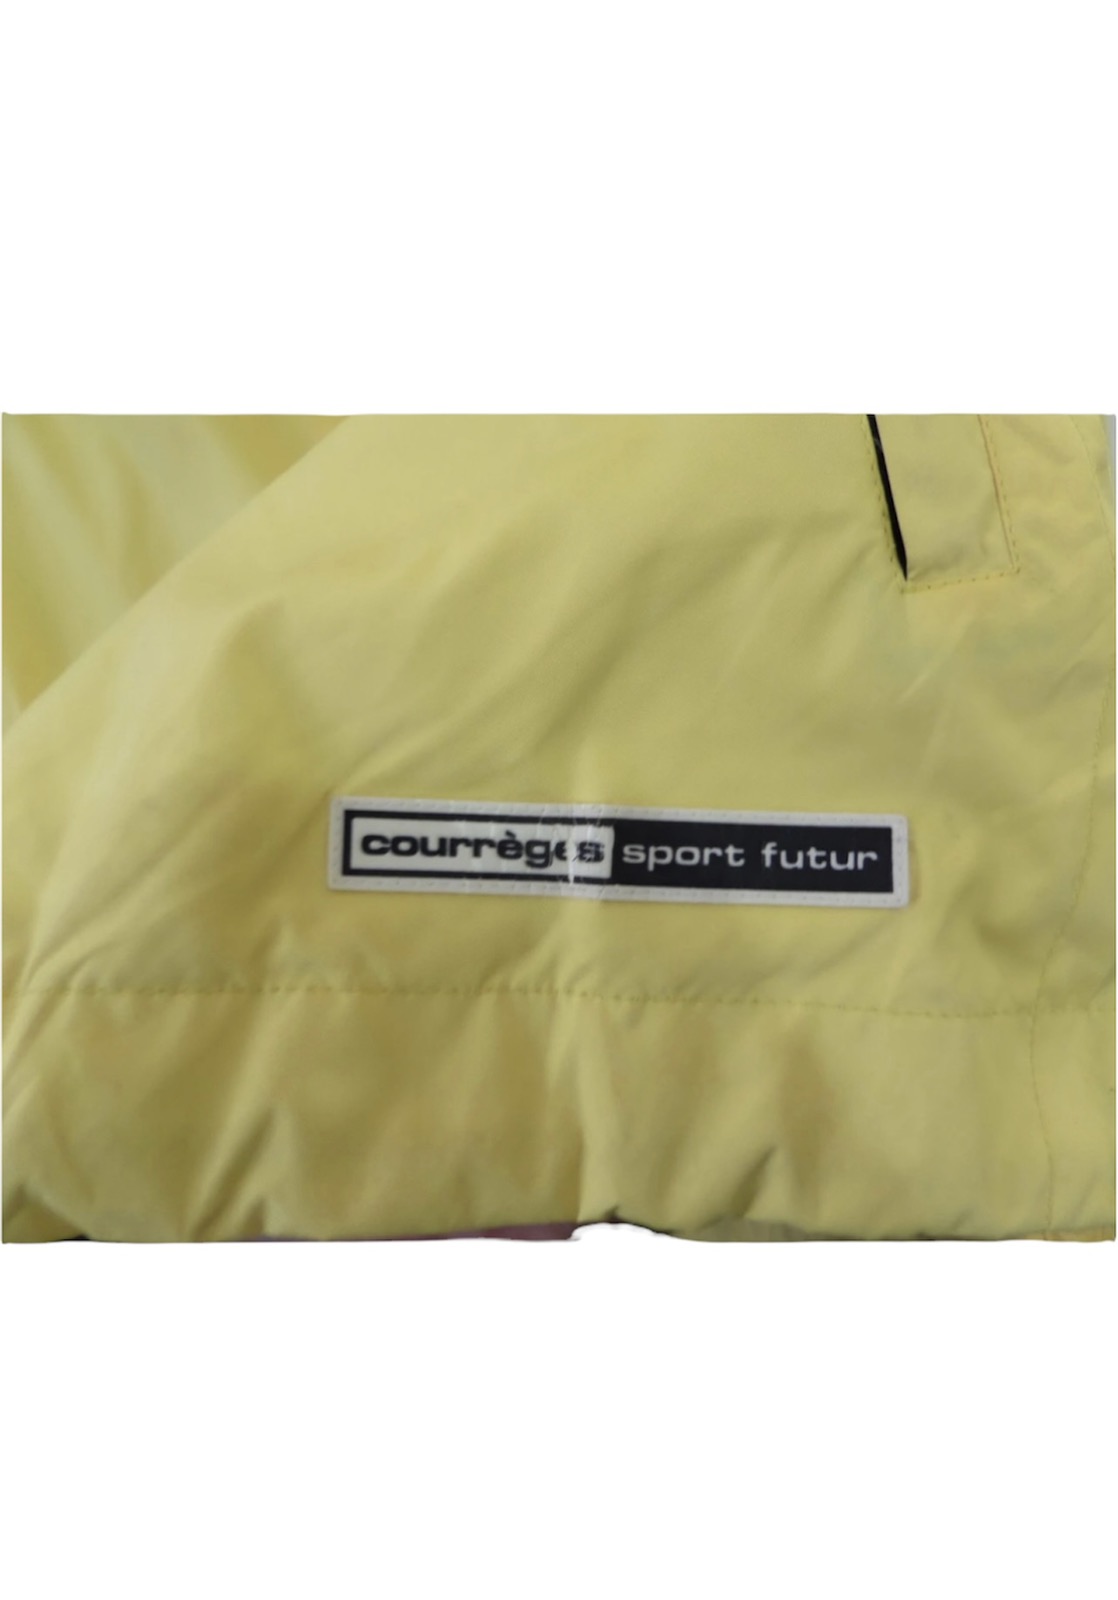 Vintage Courreges homme light jacket - 5